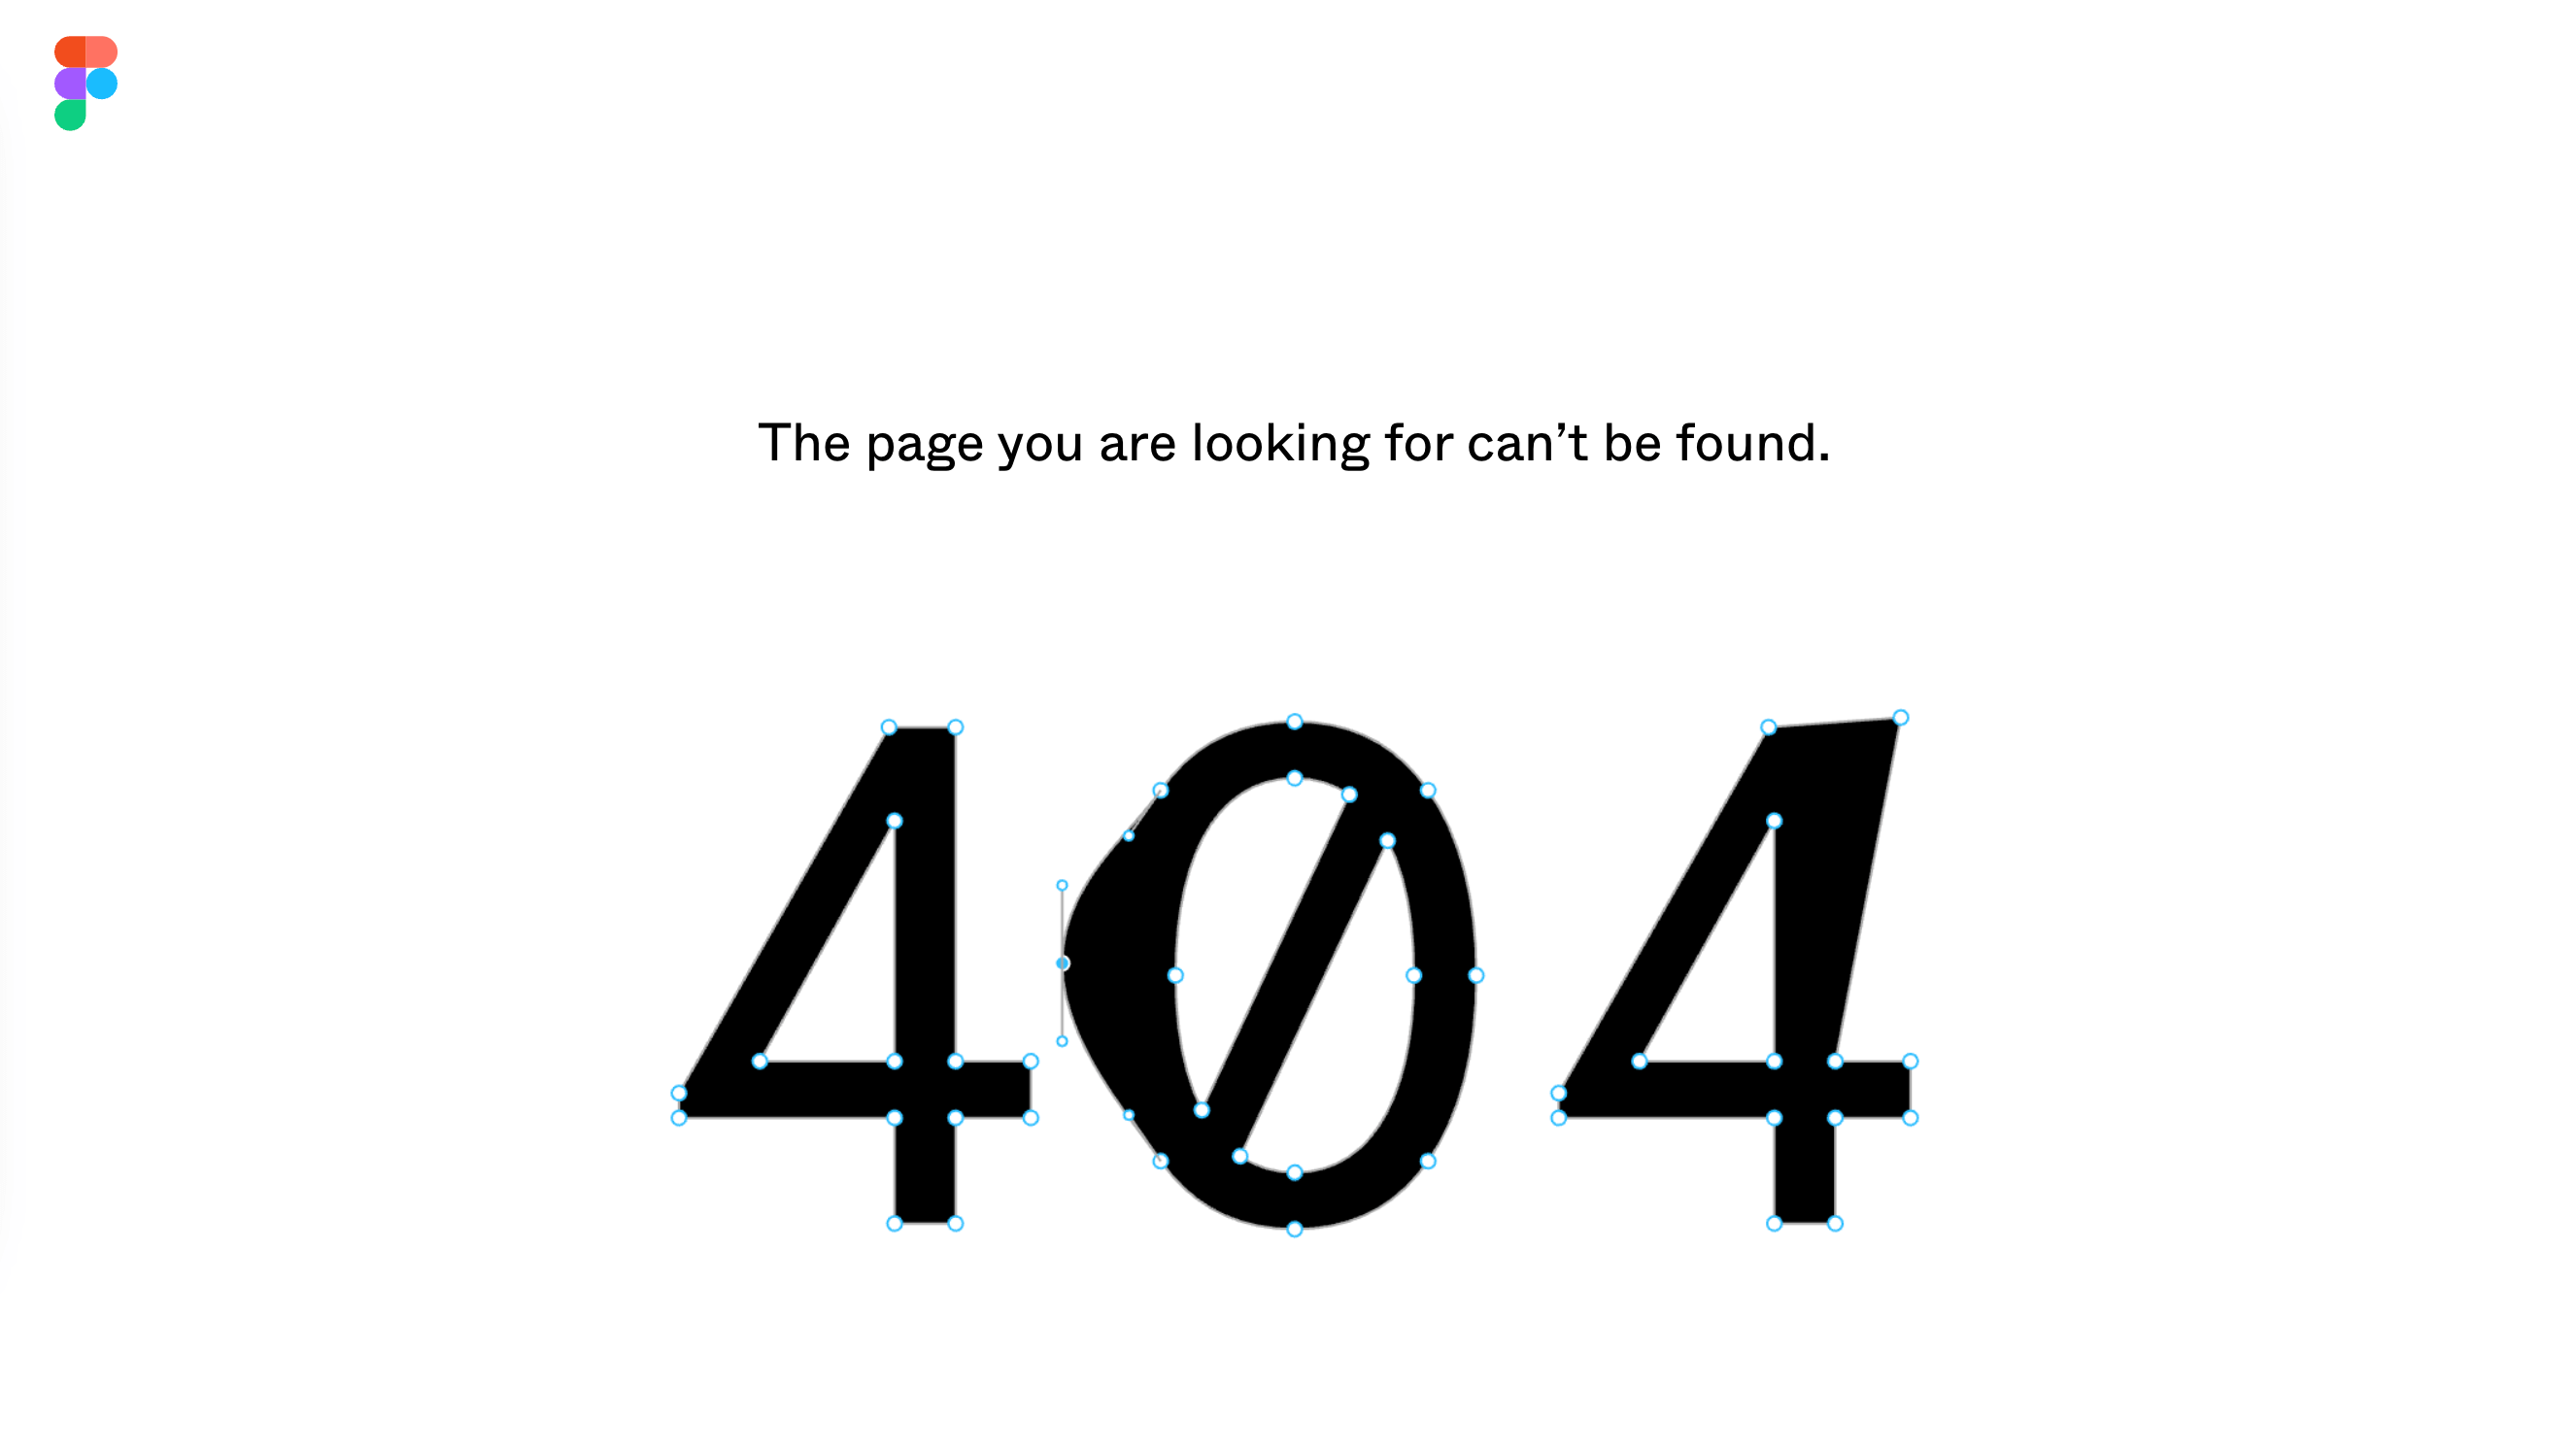 Figma's tool demo on the 404